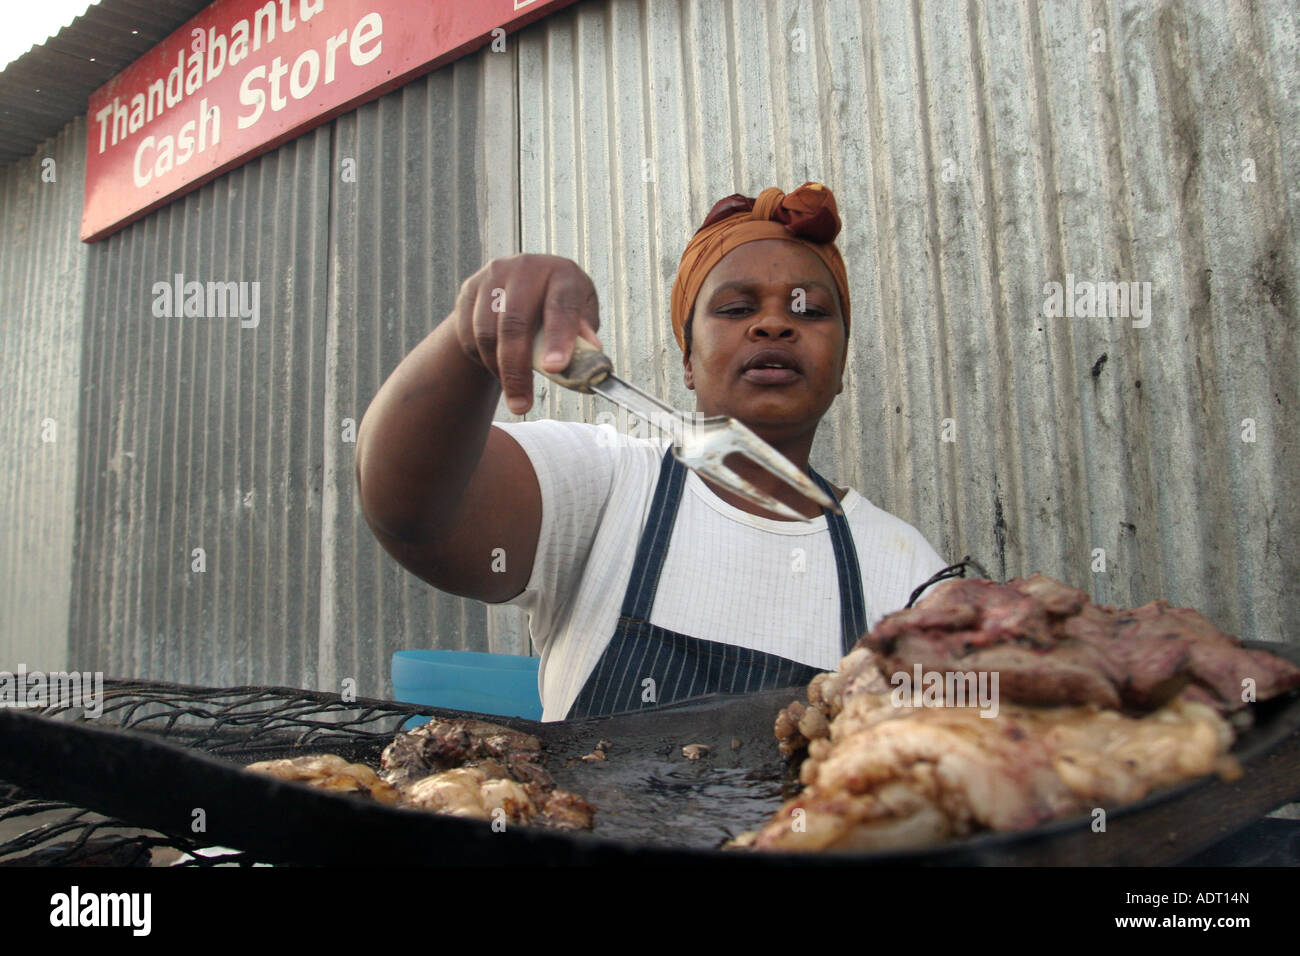 Frau fries Schafe Leber über Kohlen auf dem Bürgersteig außerhalb einer Gemeinde shop, Phillipi, in der Nähe von Khayelitsha, Kapstadt. Stockfoto